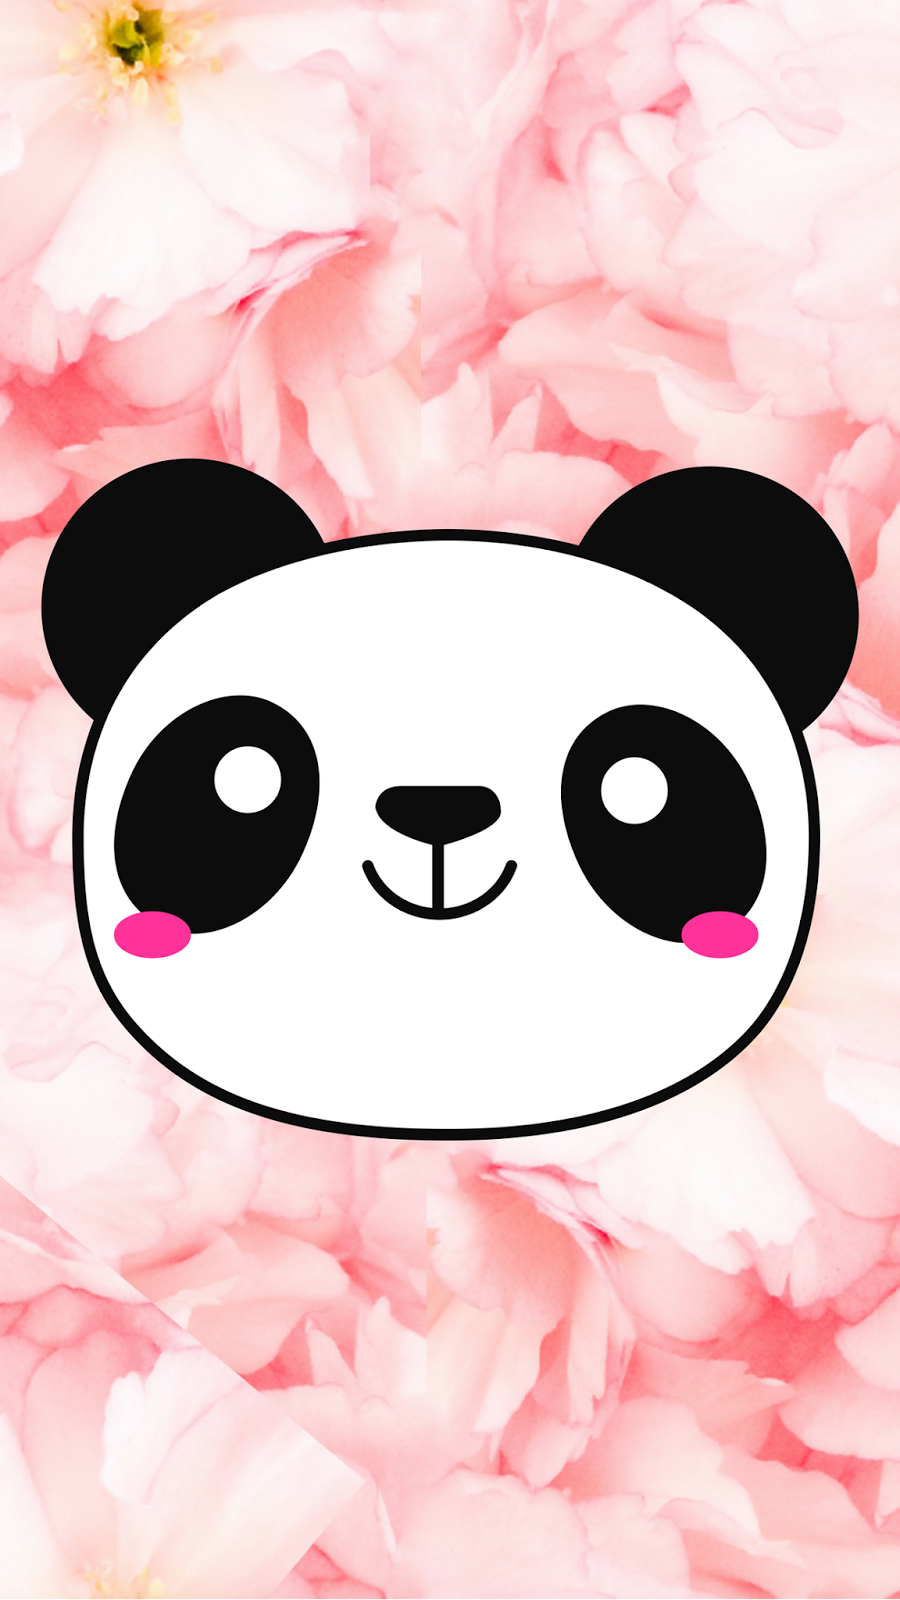 Free cute Panda wallpaper!. i blog about stuff xo. Cute panda wallpaper, Panda wallpaper, Cartoon wallpaper